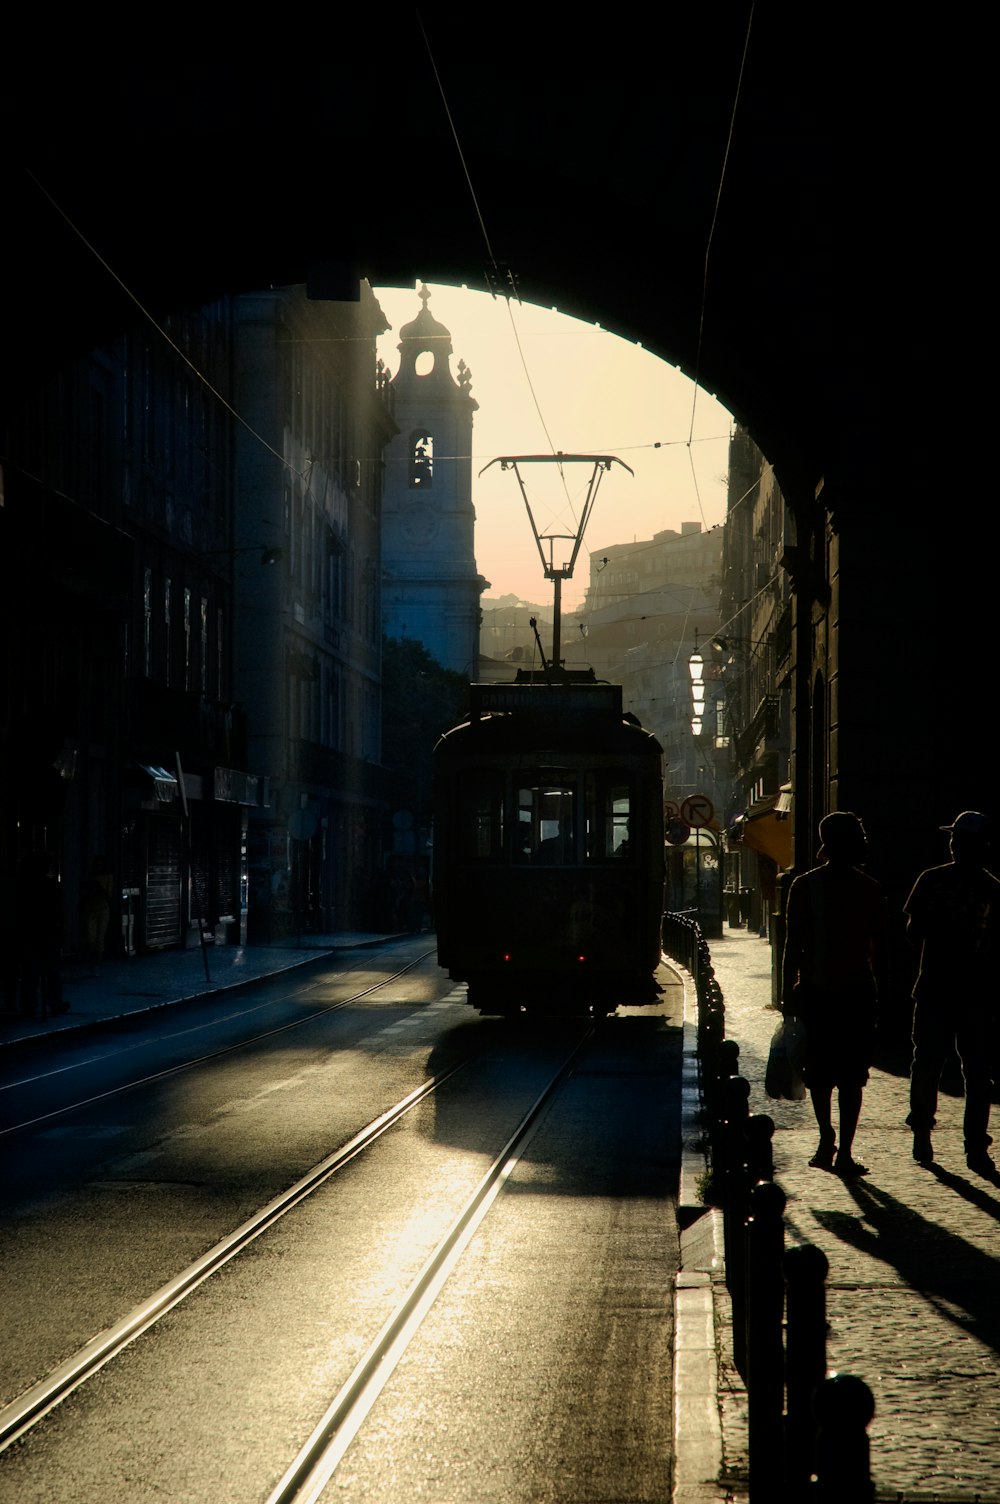 people walking on sidewalk near black tram during night time